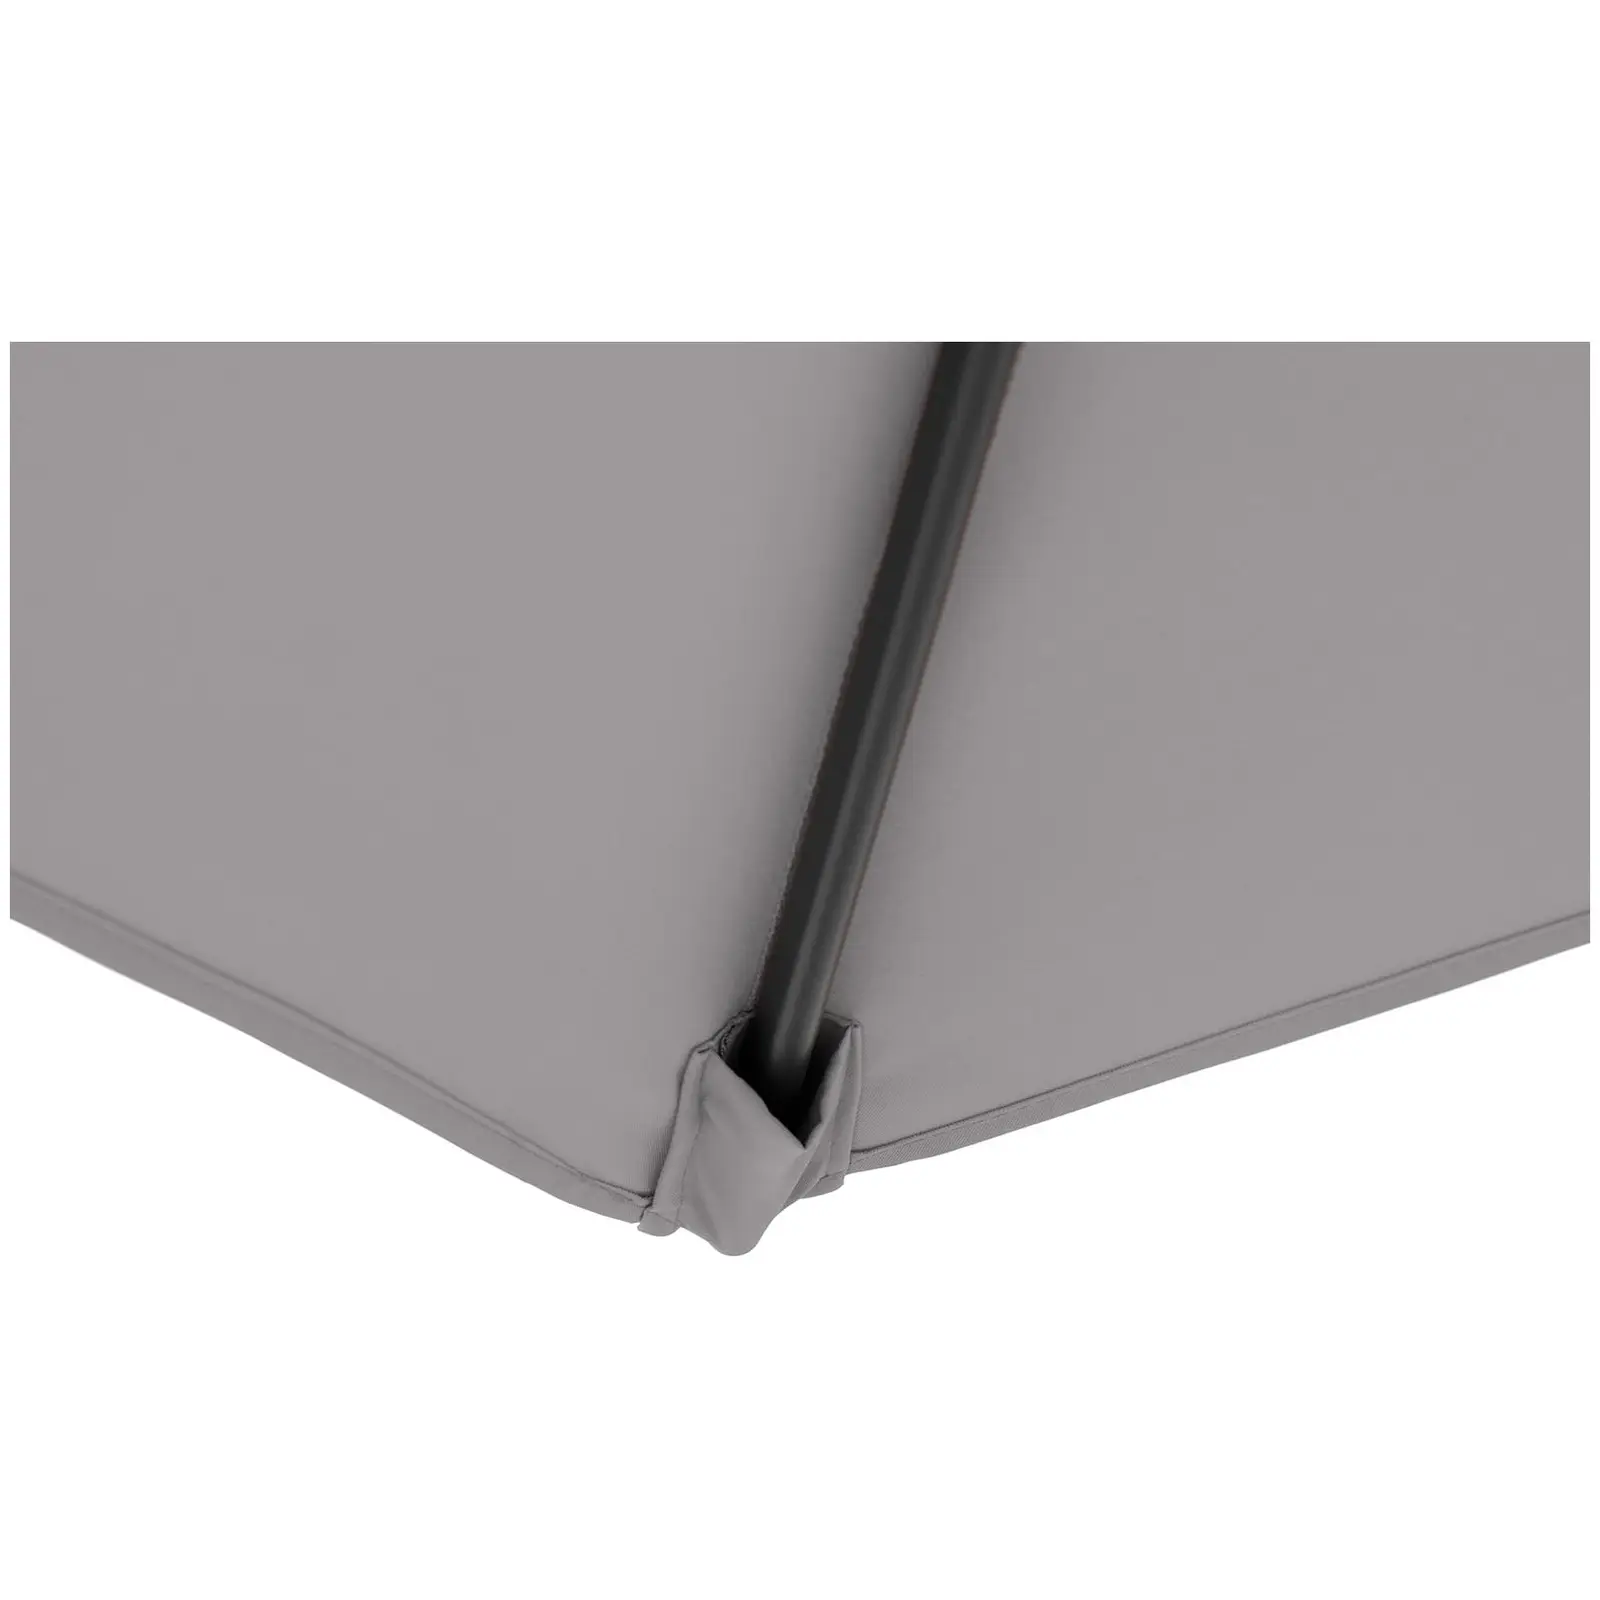 B-varer Parasoll  - mørkegrå - rektangulær - 200 x 300 cm